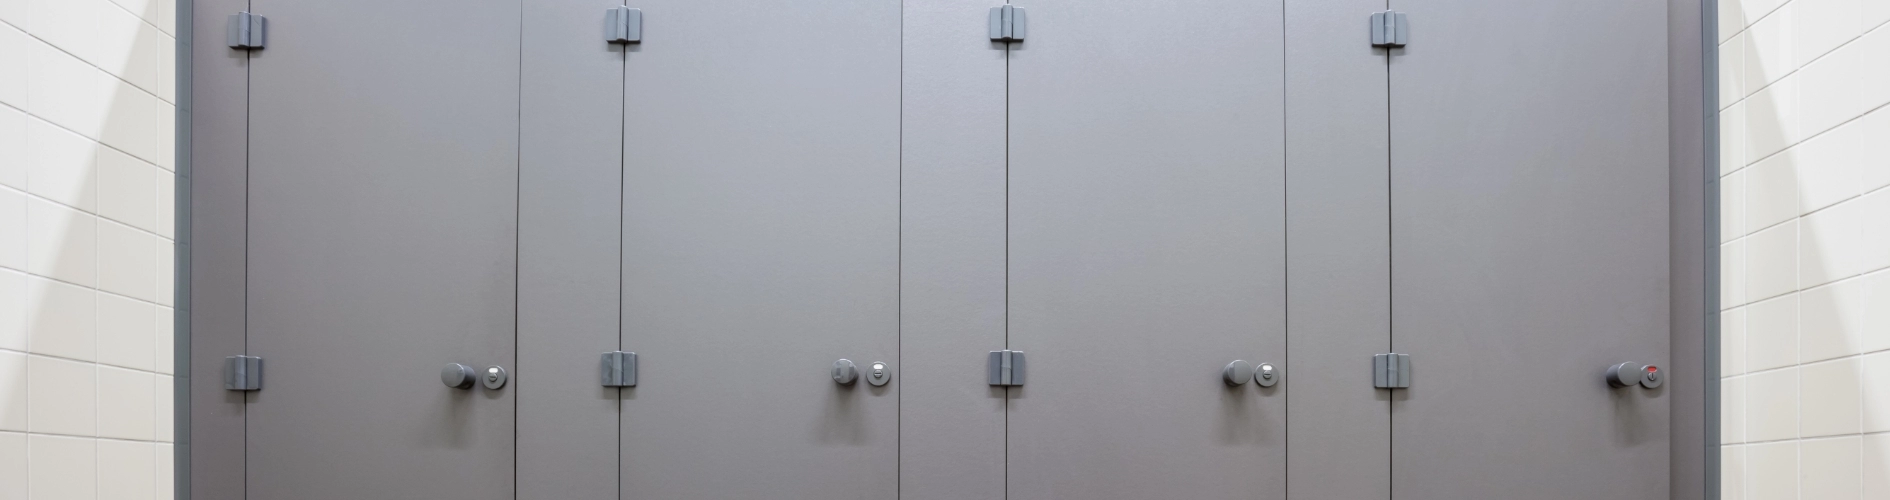 drzwi kabin sanitarnych